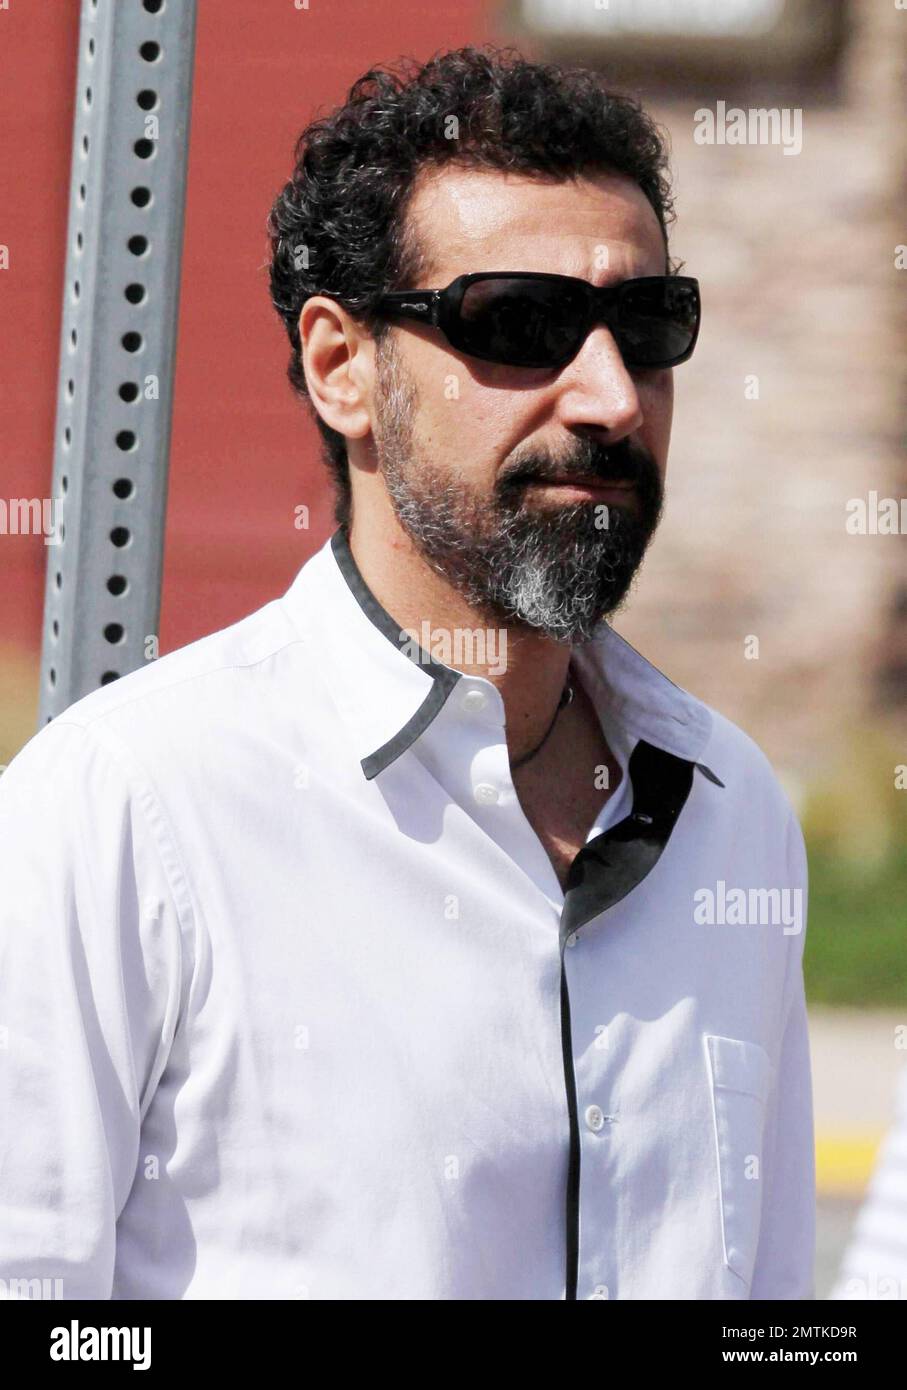 EXCLUSIF !! Le chanteur arménien-américain principal de System of a Down  Serj Tankian est repéré à Mailbu, CA. 04/24/11 Photo Stock - Alamy